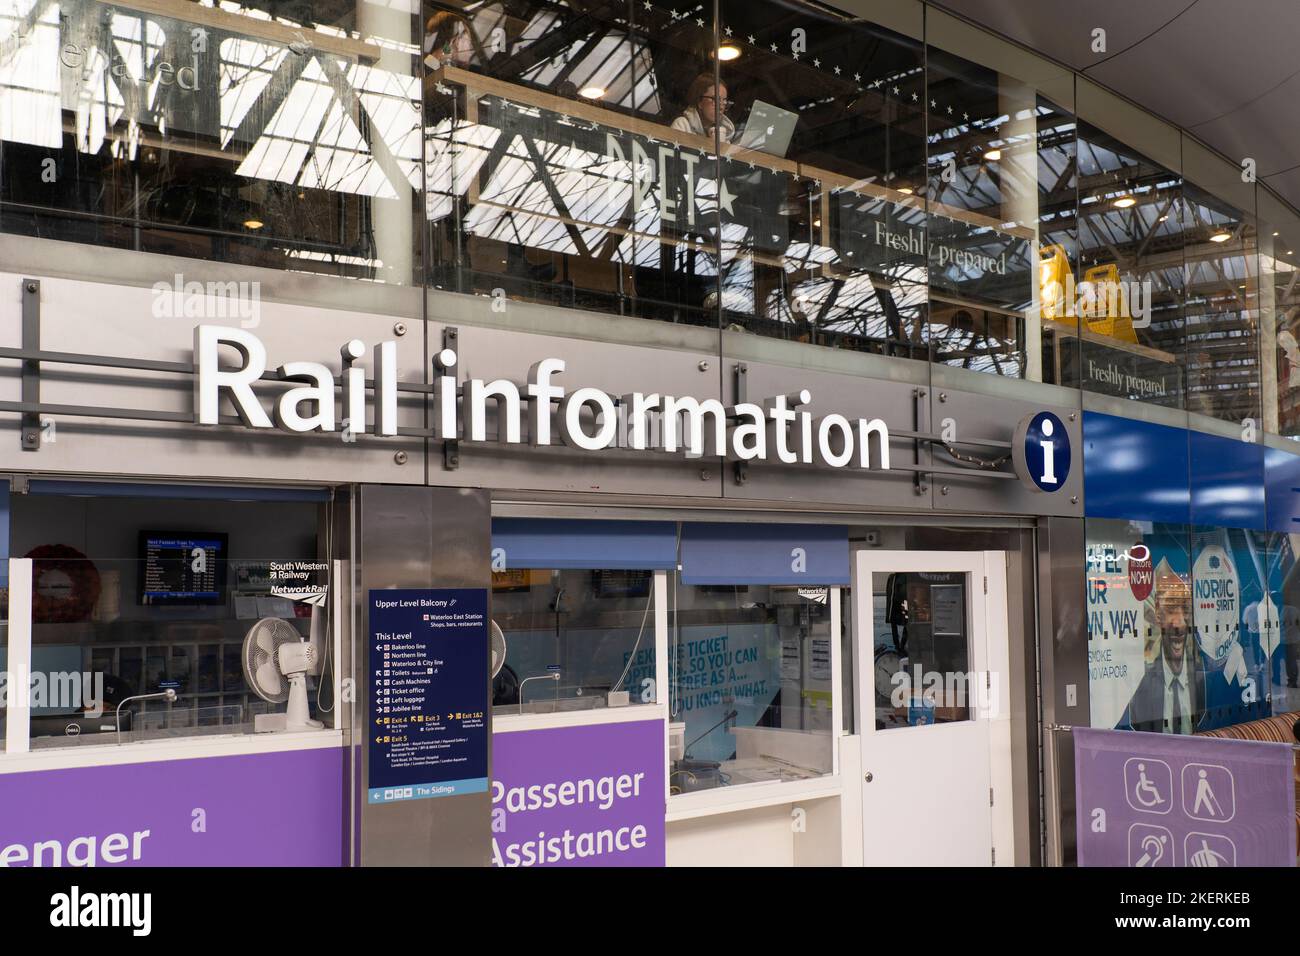 Bahninformationsbüro für Reise- und Bahnanfragen am Bahnhof Waterloo in London, England. Thema: Bahnverspätungen, Zugausfälle Stockfoto